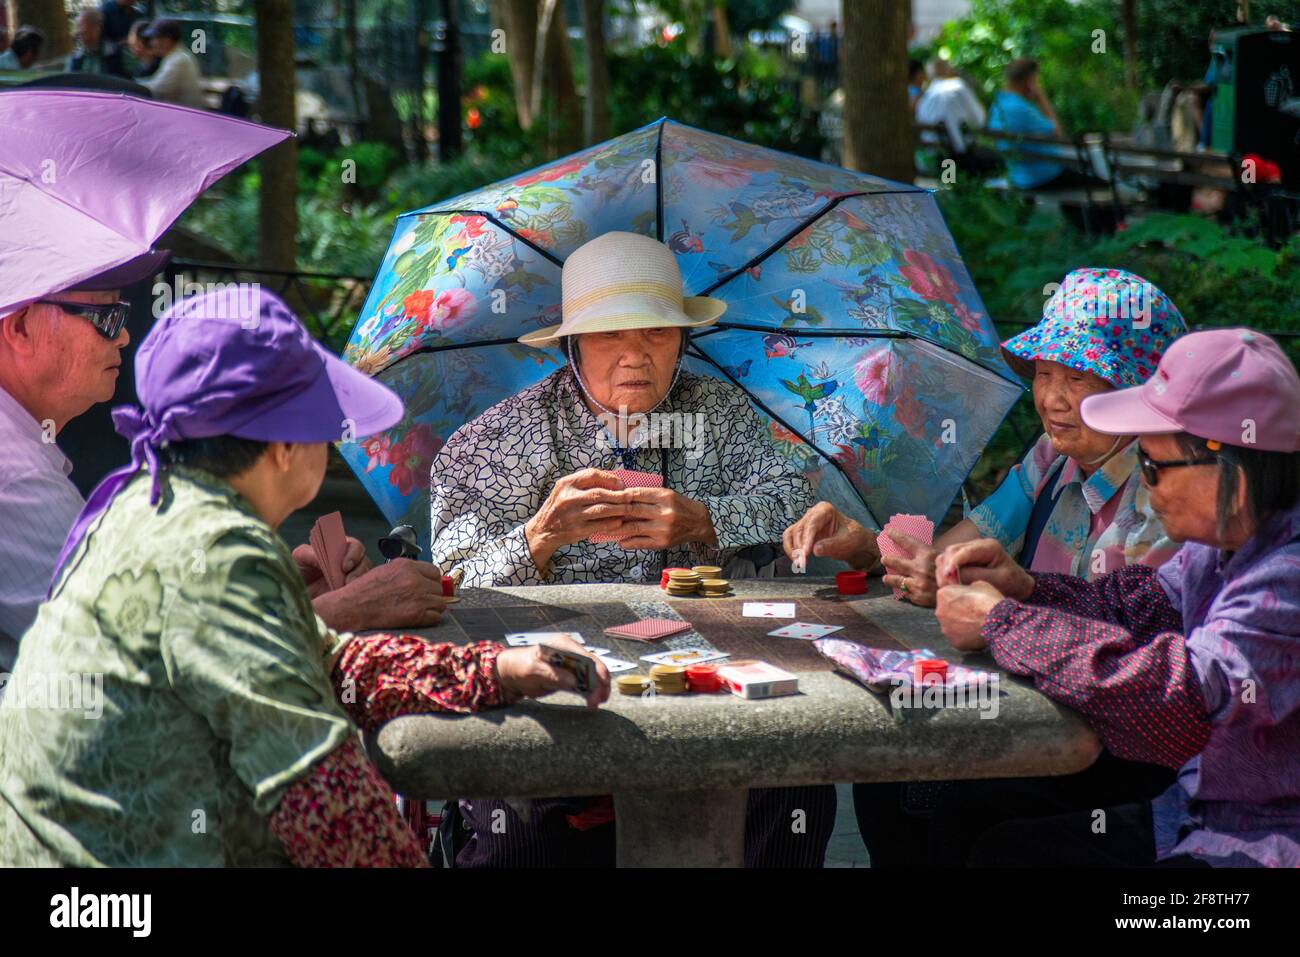 Columbus Park, vista in estate dei membri della comunità cinese giocando a carte in Columbus Park a Chinatown, il centro di Manhattan, New York City, Stati Uniti d'America Foto Stock